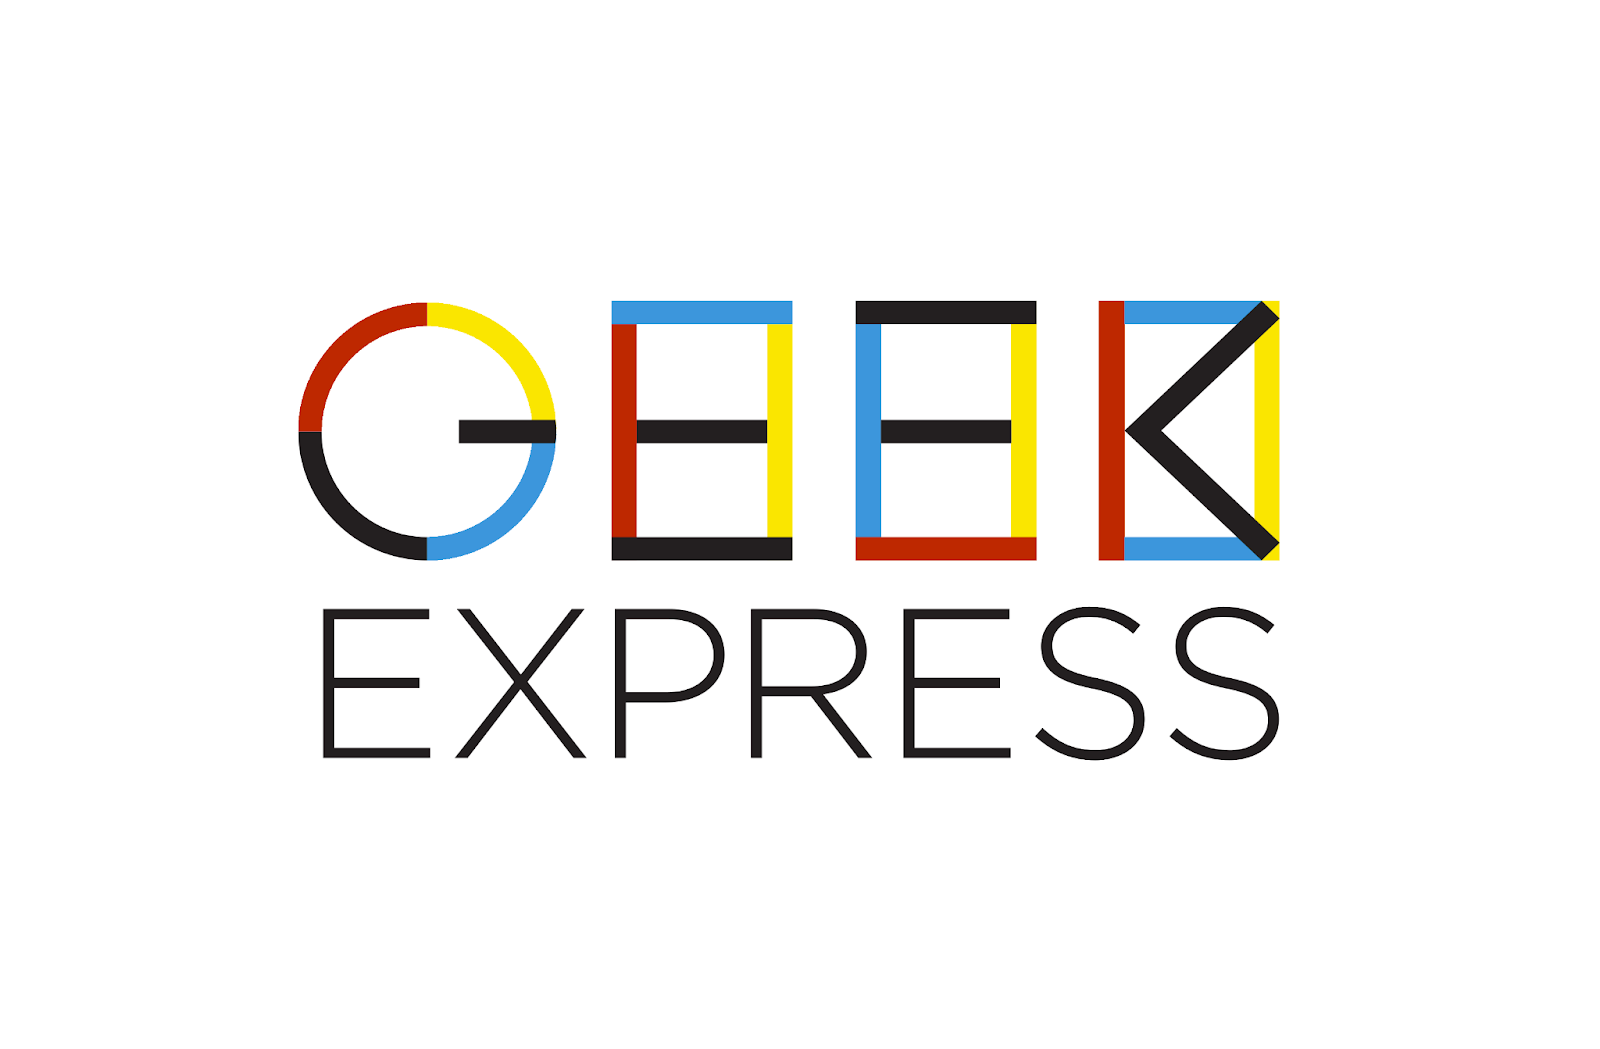 Geek Express